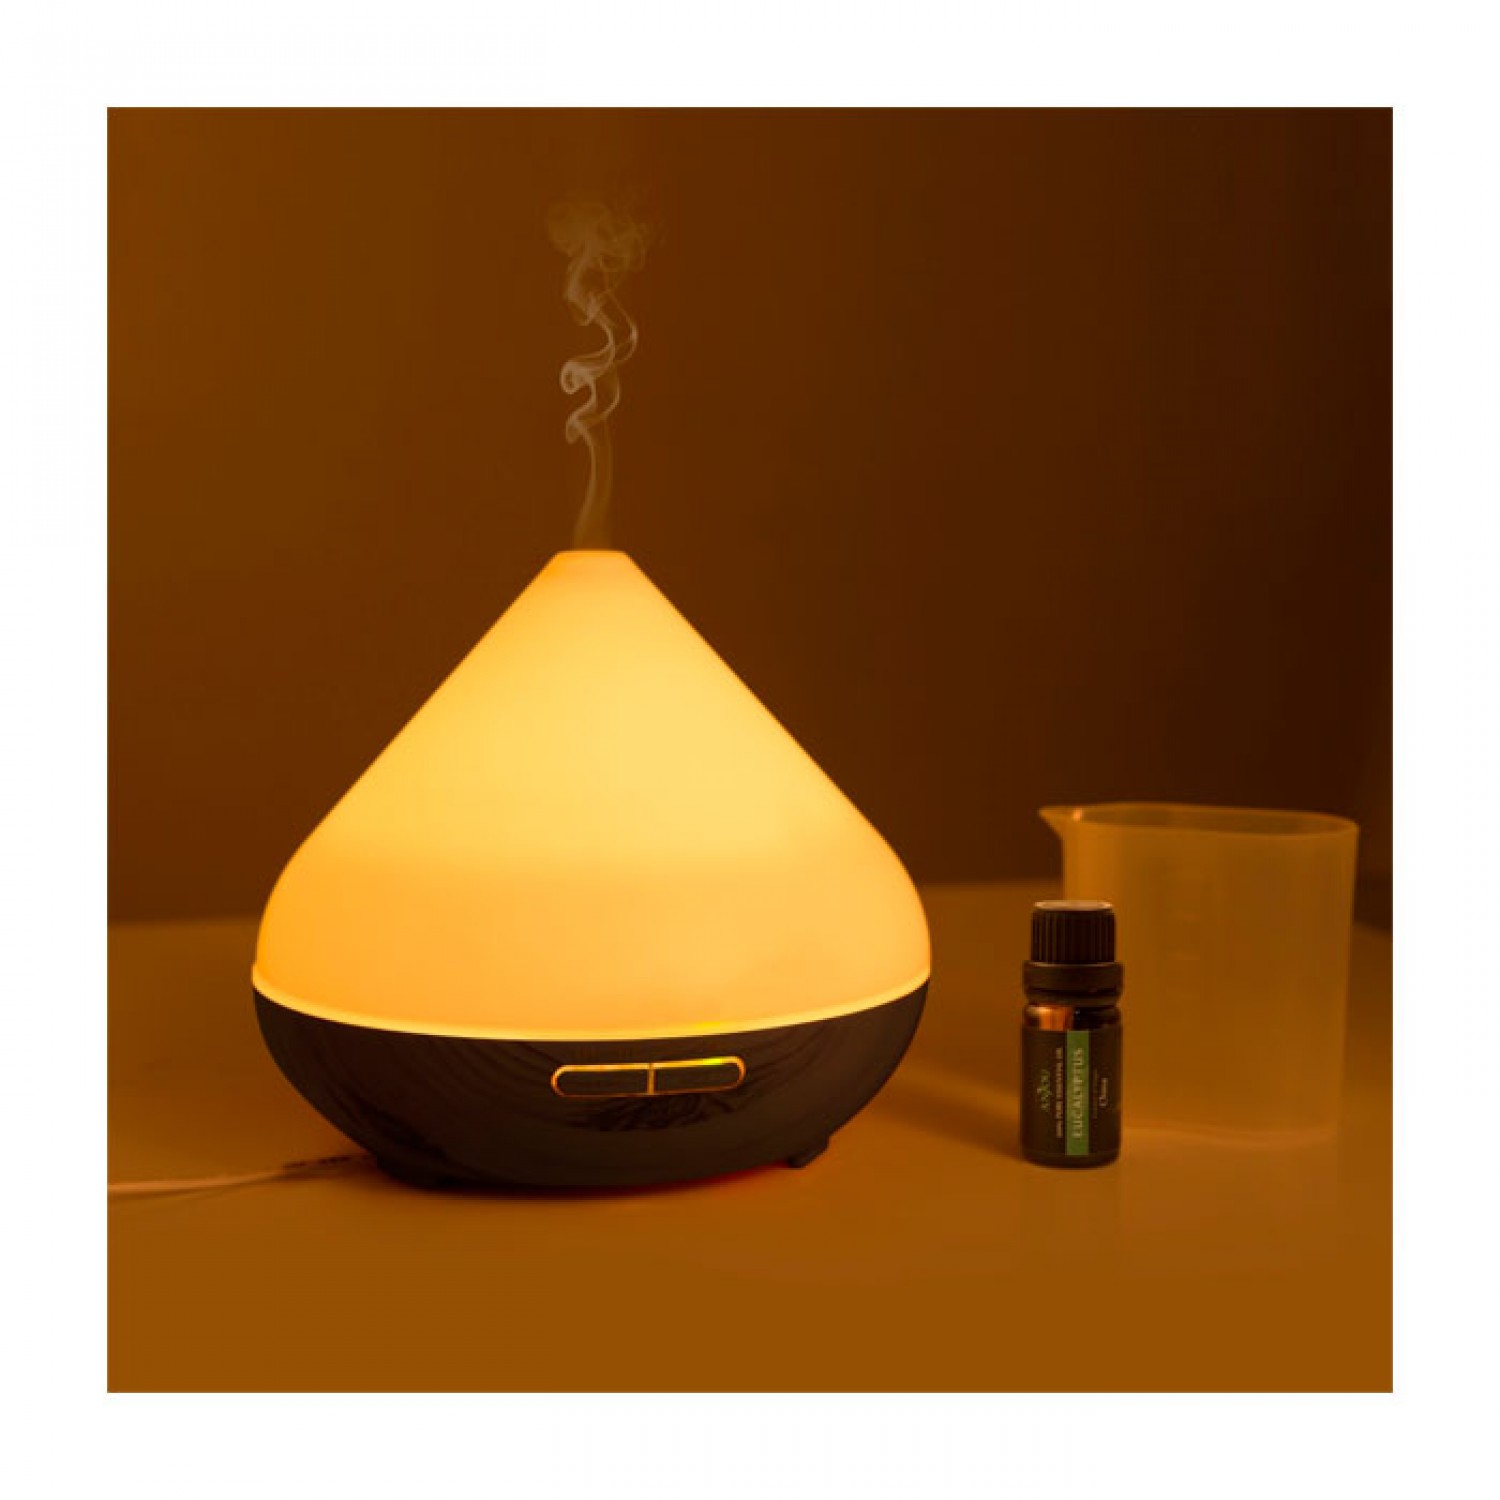 Υγραντήρας Yπερήχων και Συσκευή Αρωματοθεραπείας Ultrasonic Aroma Humidifier 7 LED 300ml Σκούρο Καφέ